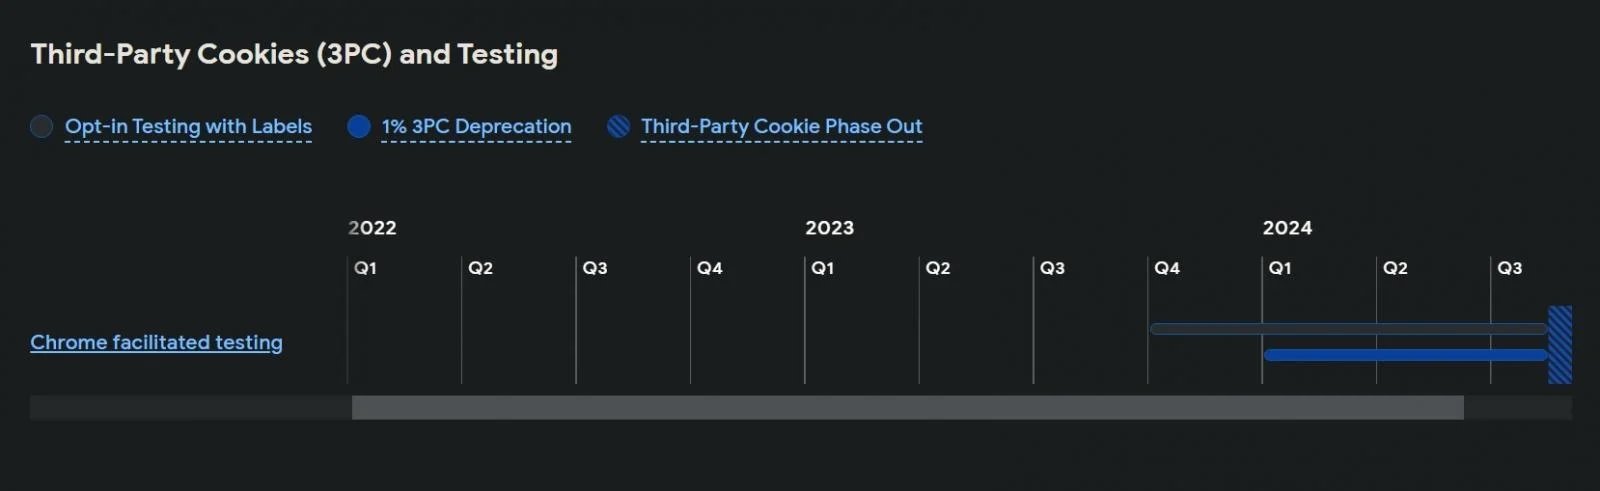 calendário de descontinuação dos cookies de terceiros